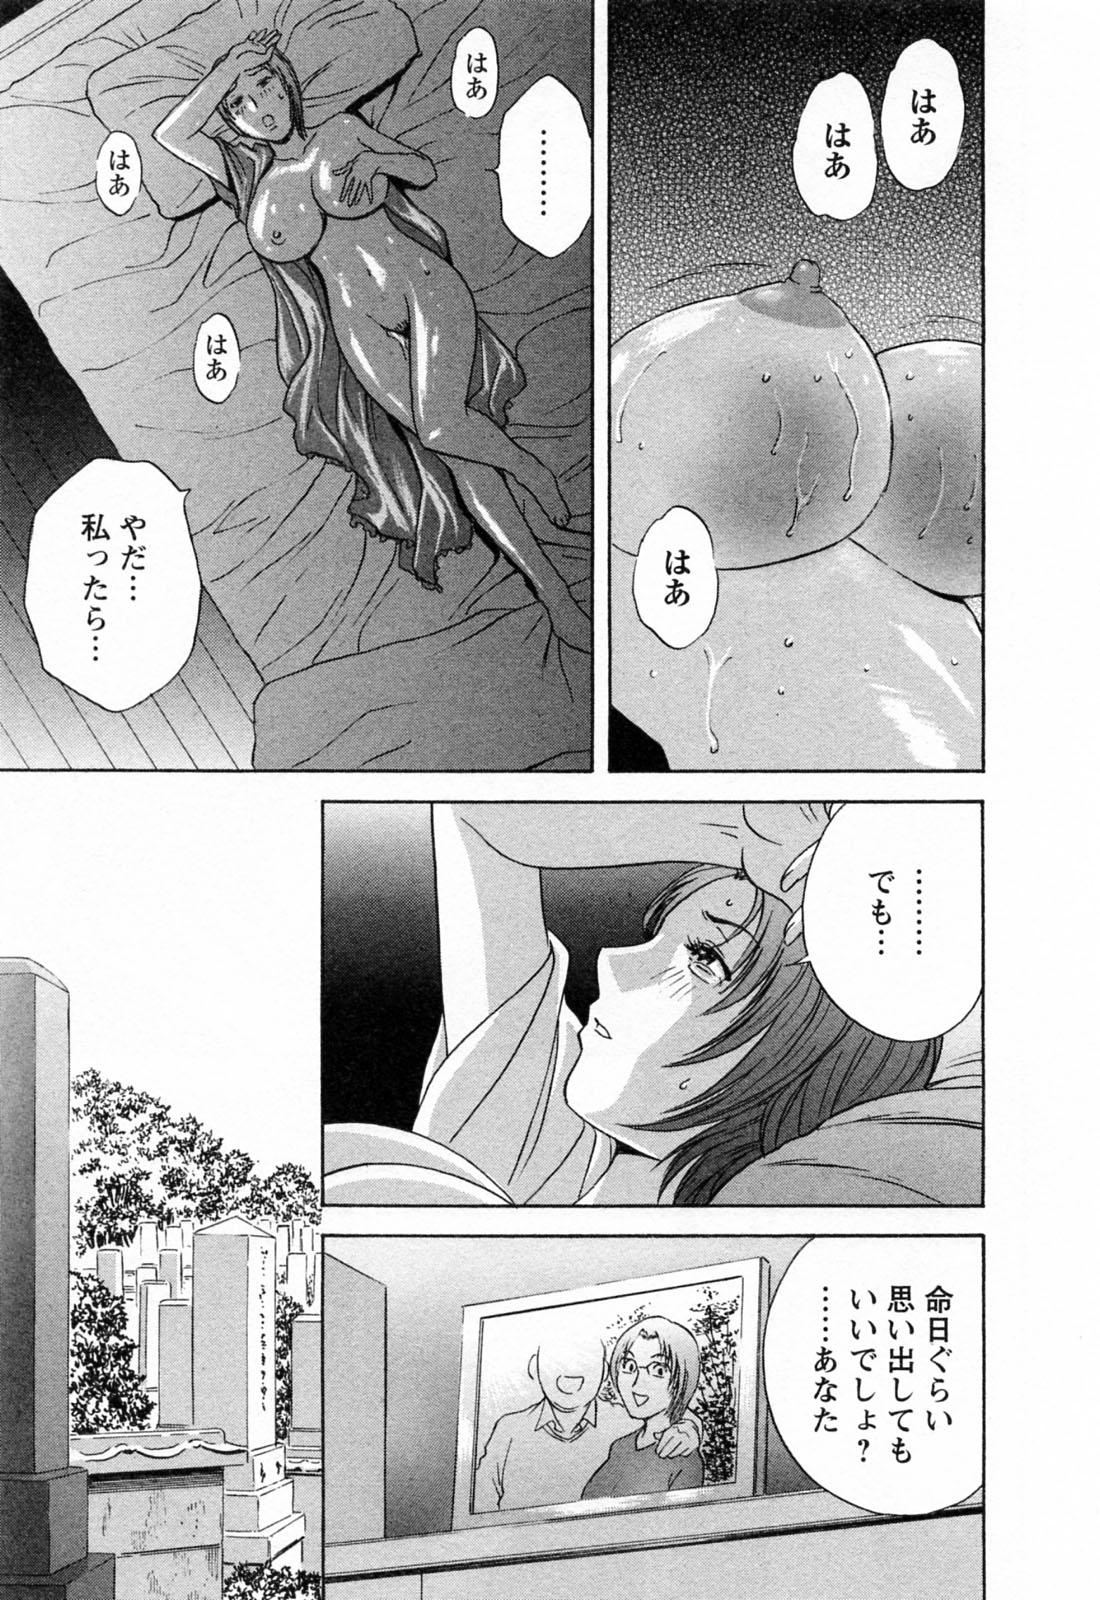 [Hidemaru] Mo-Retsu! Boin Sensei (Boing Boing Teacher) Vol.4 176